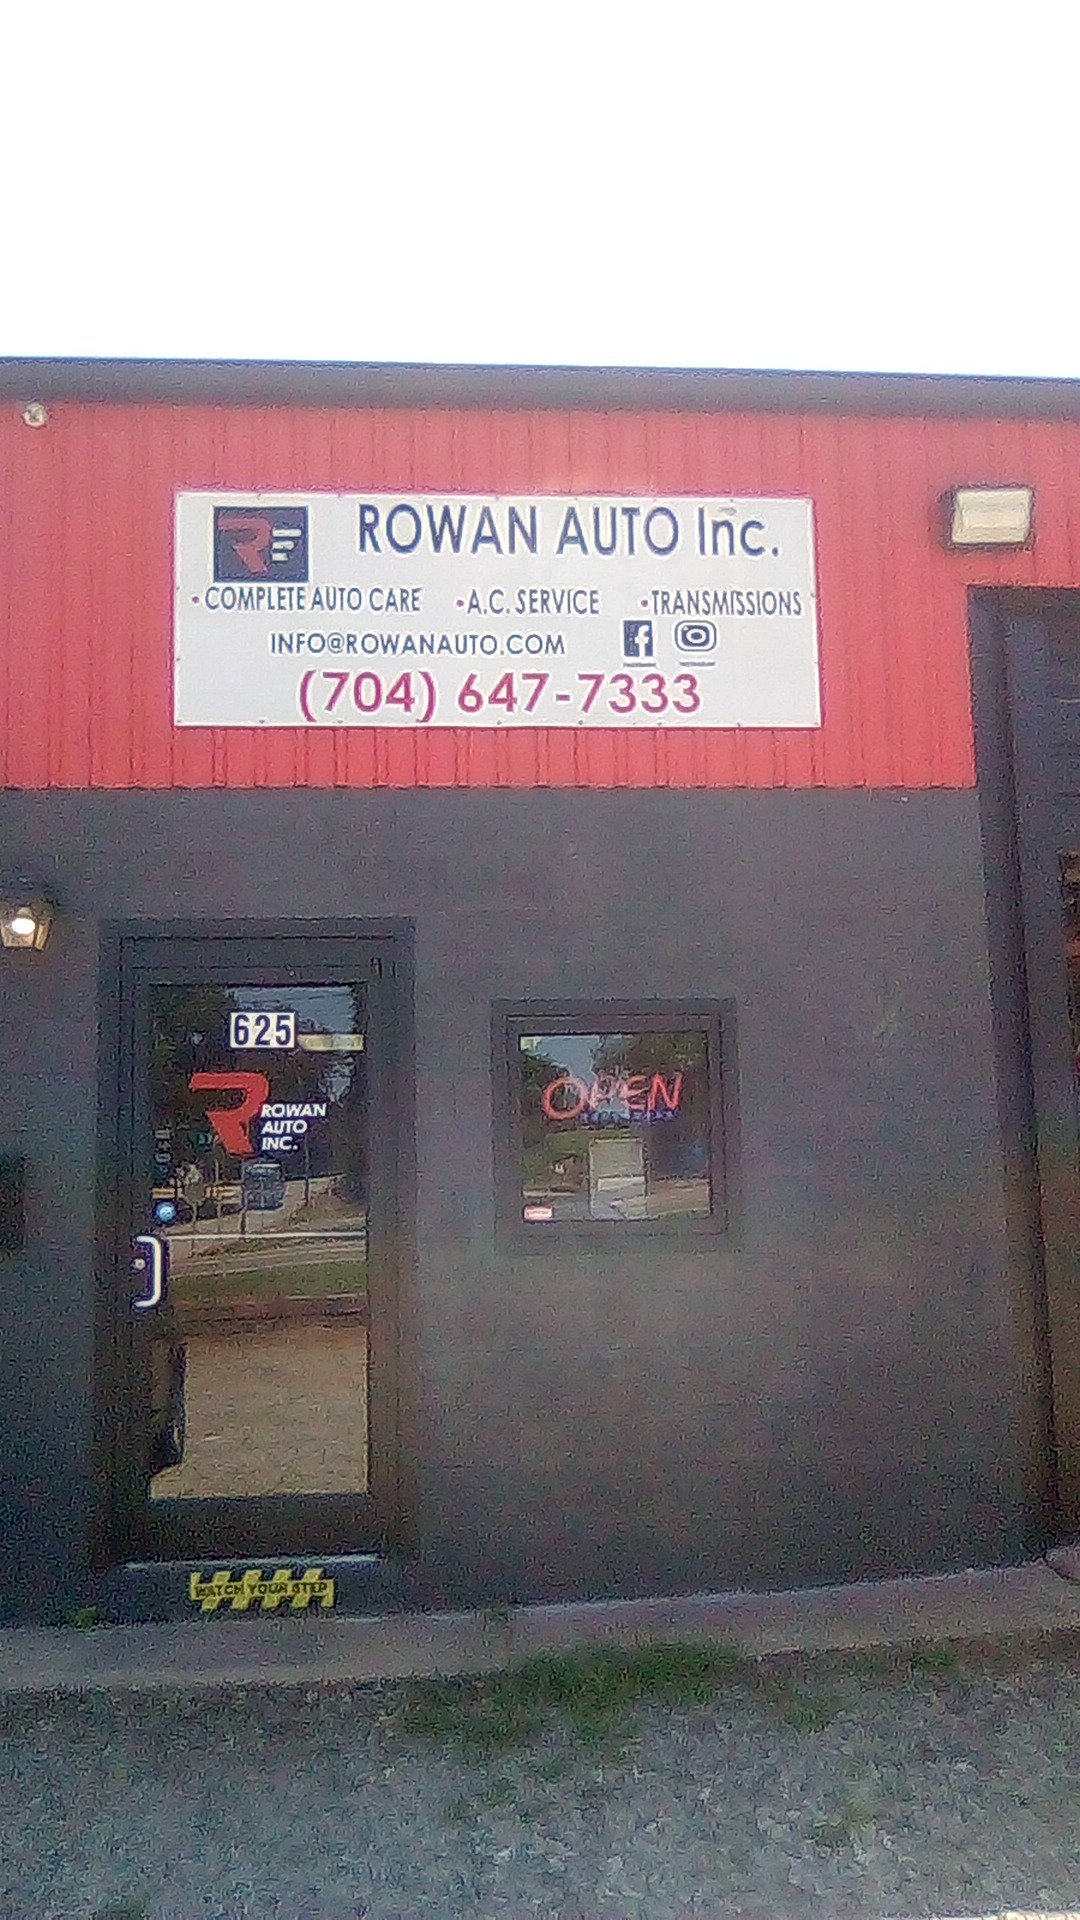 Rowan Auto Inc.